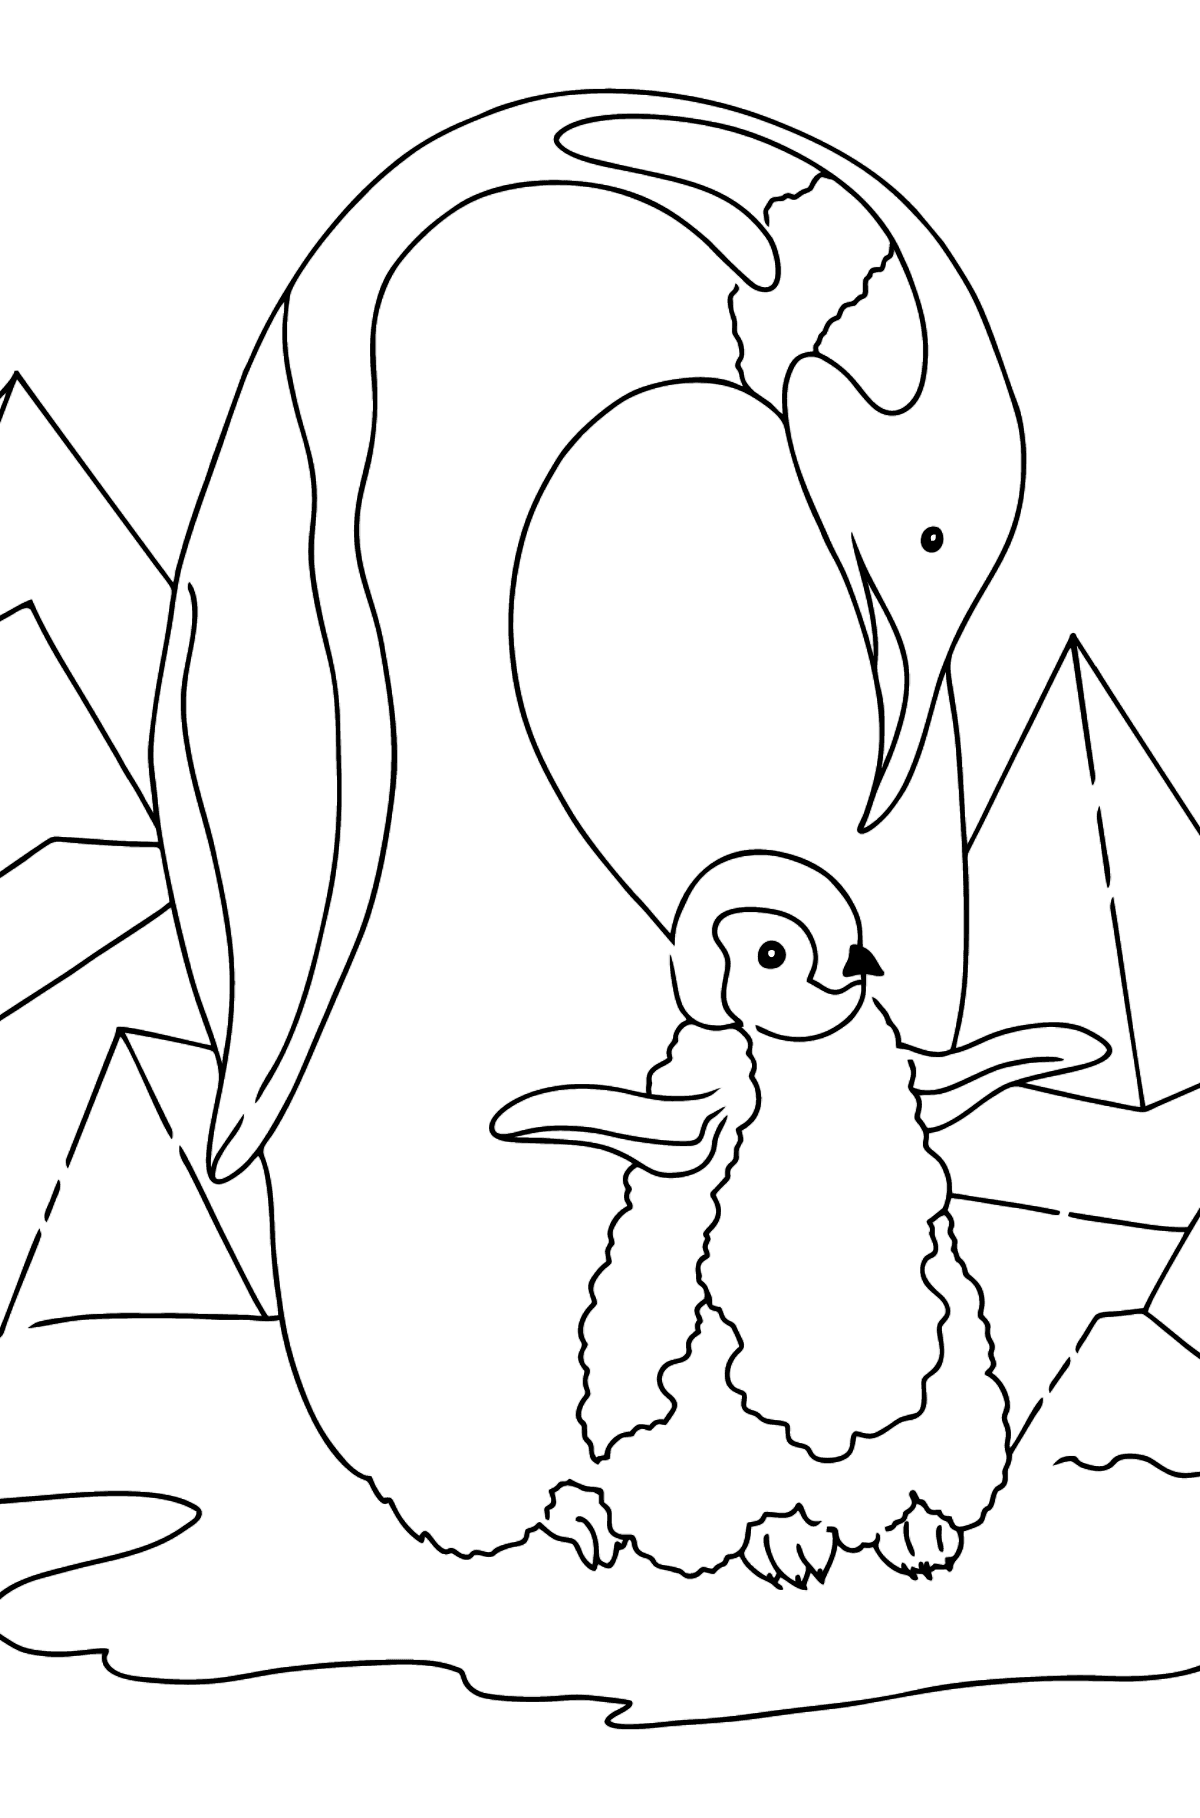 Desenho de pinguim para colorir (fácil) - Imagens para Colorir para Crianças